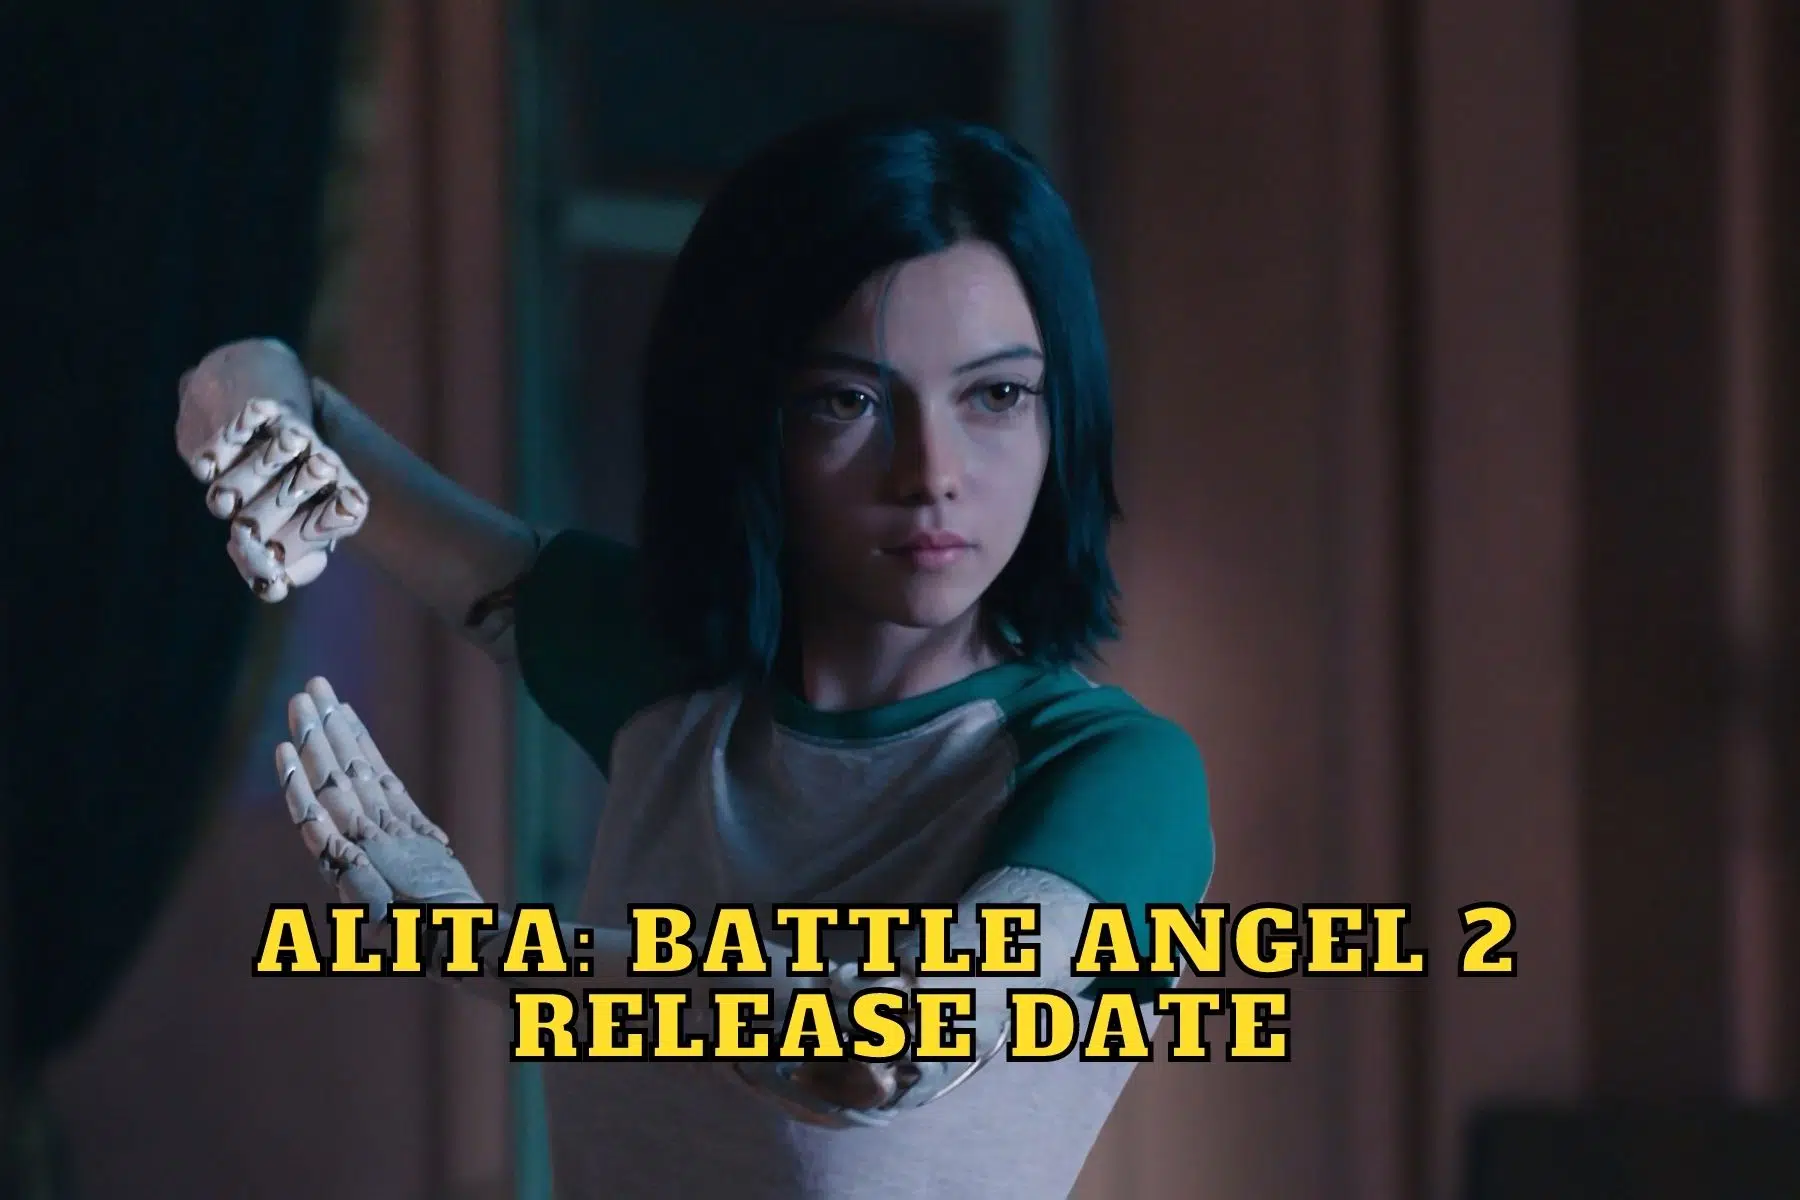 Alita: Battle Angel 2 Release Date, Trailer - Is it Canceled?